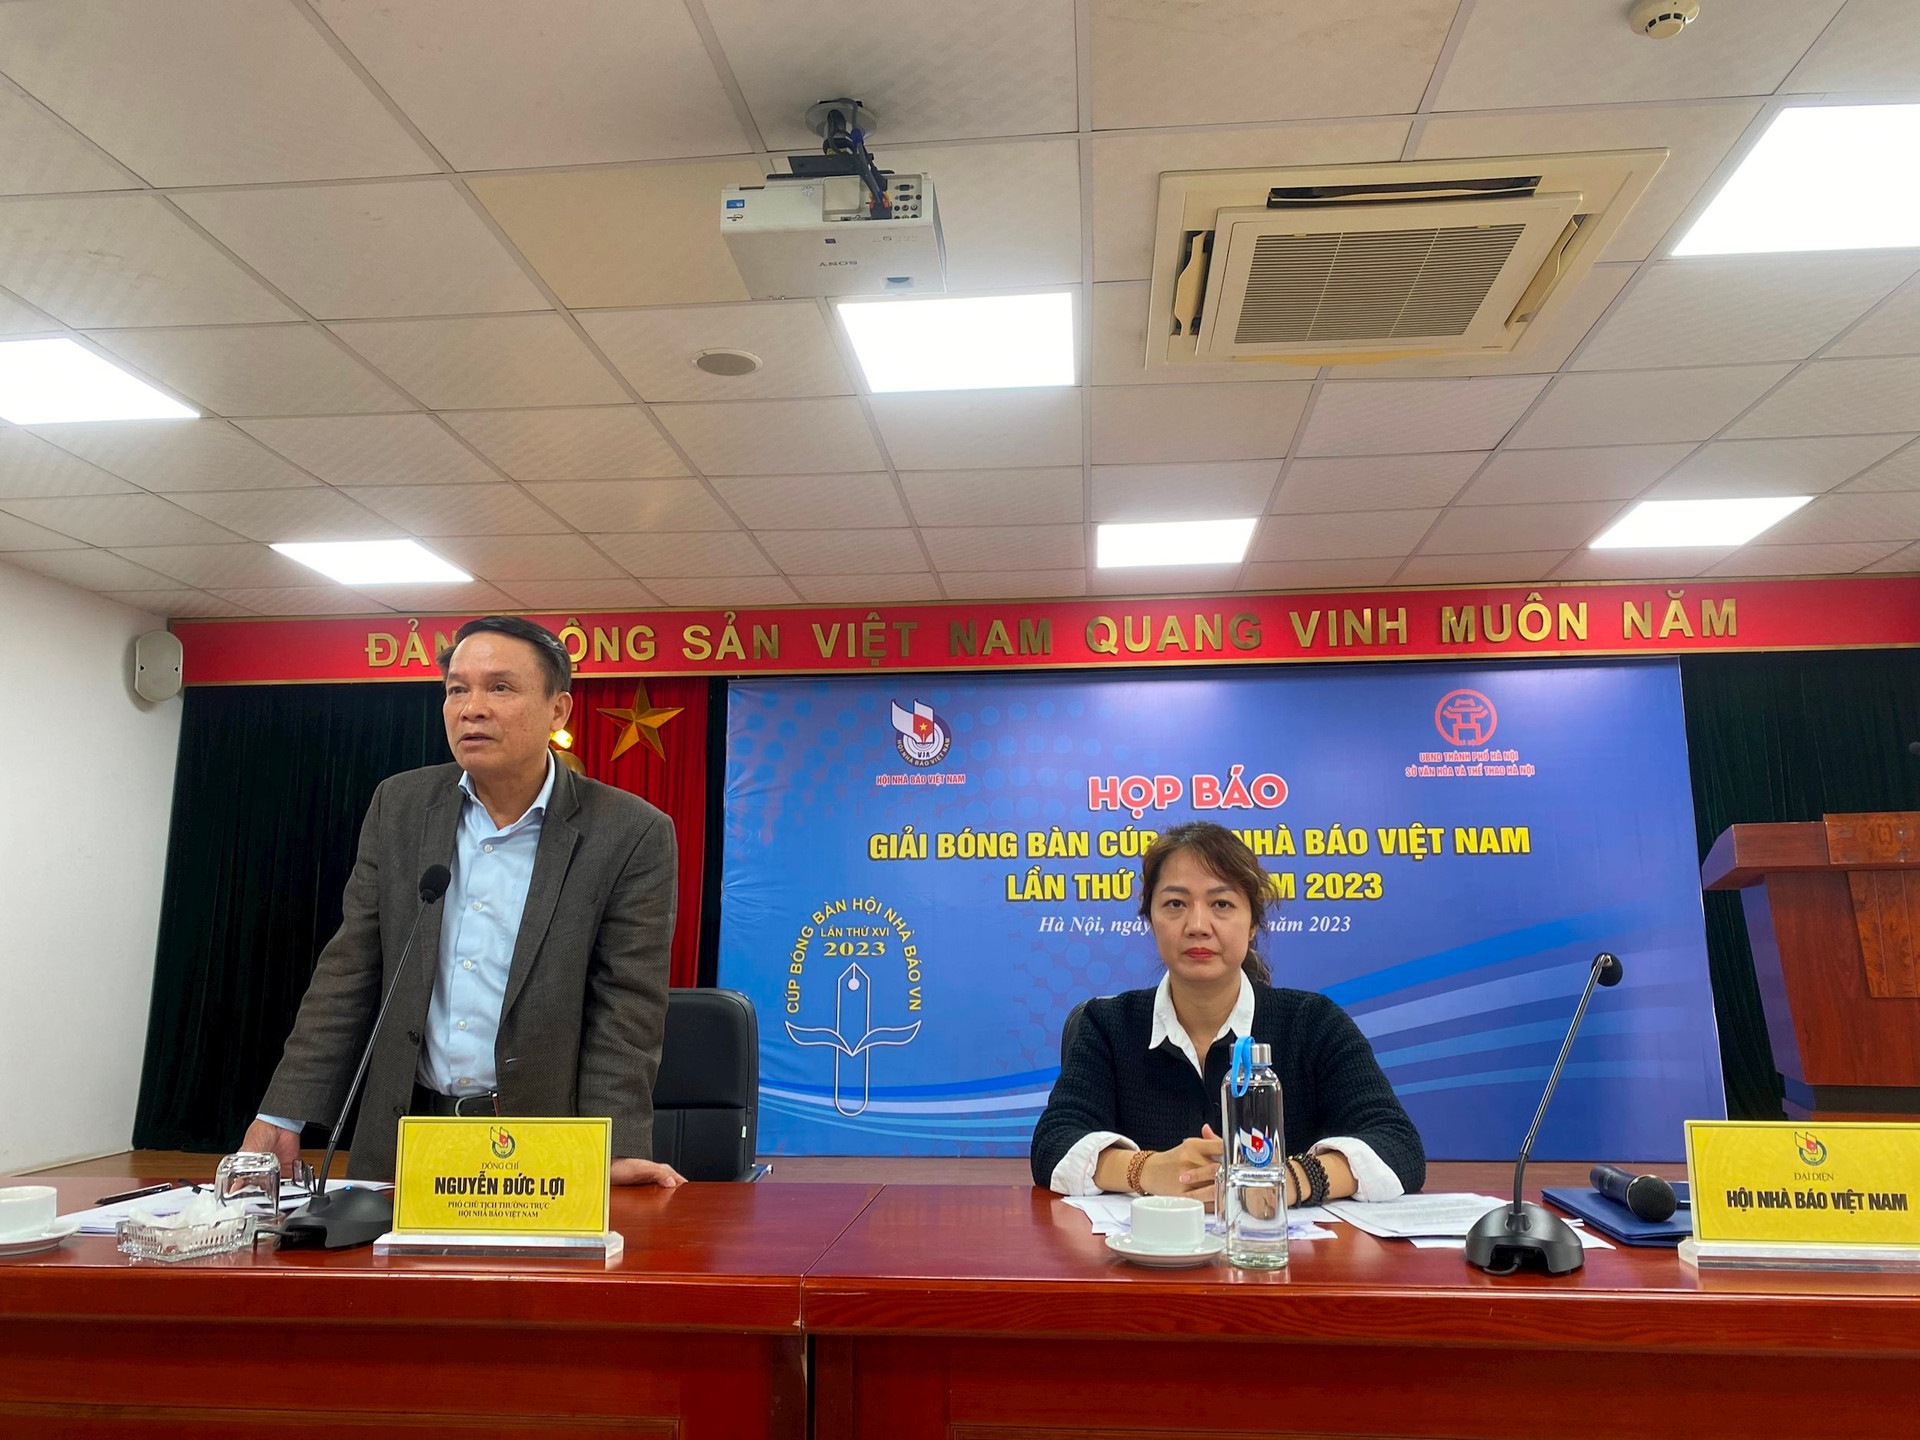 Gần 200 vận động viên tranh tài Giải bóng bàn cúp Hội Nhà báo Việt Nam 2023